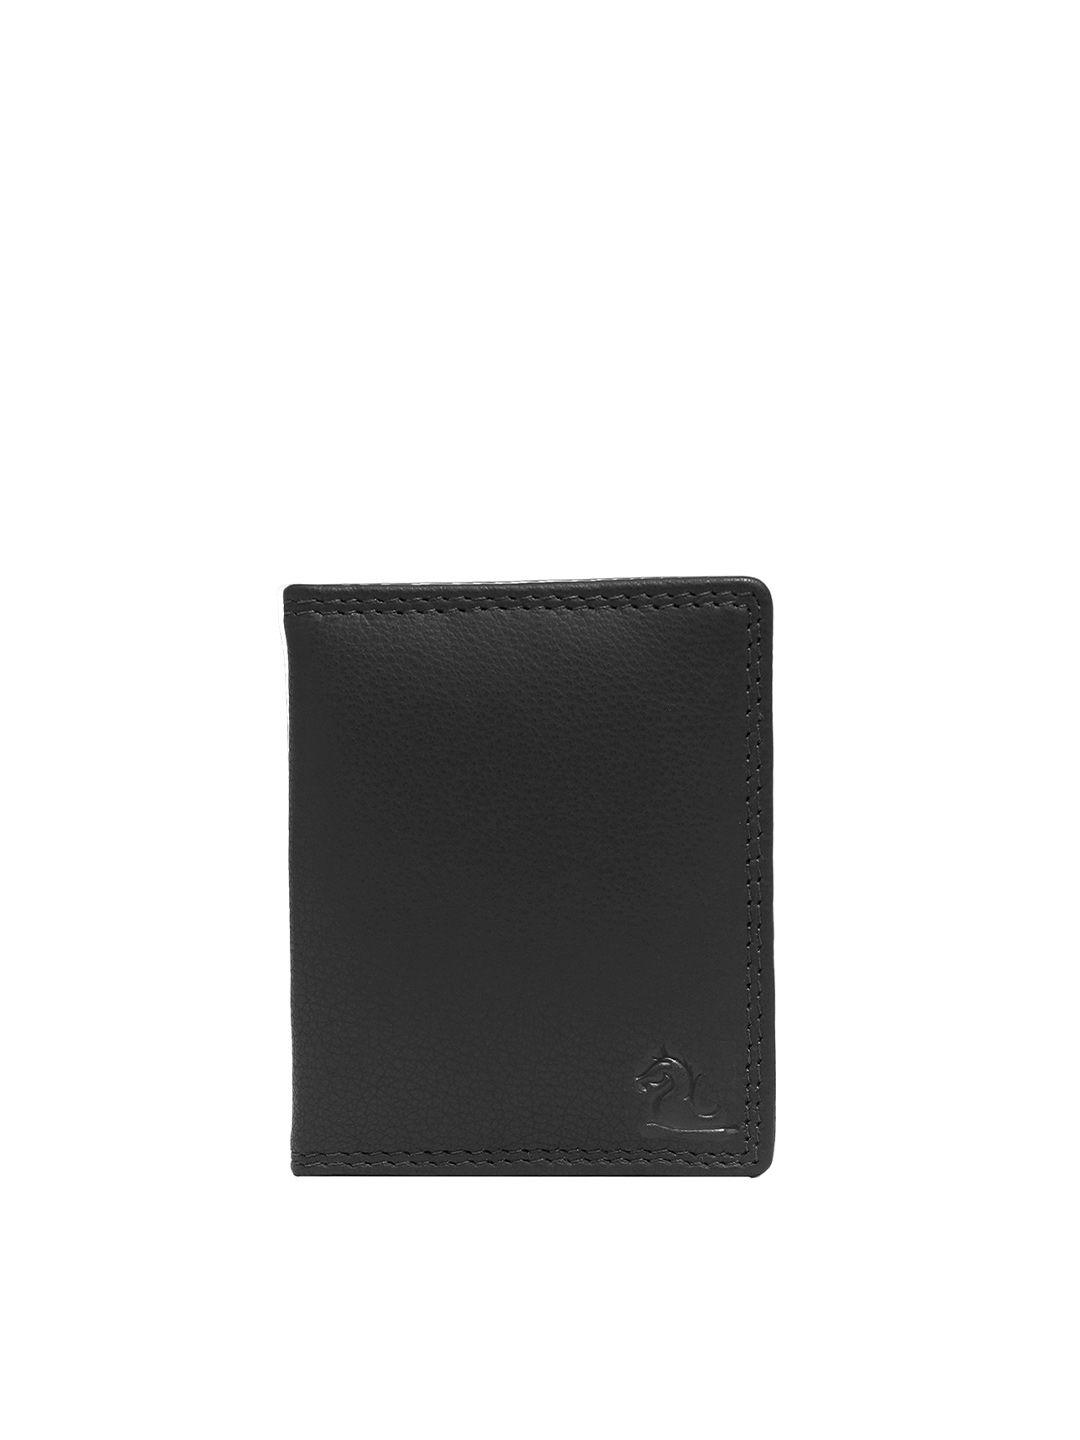 kara men black leather card holder